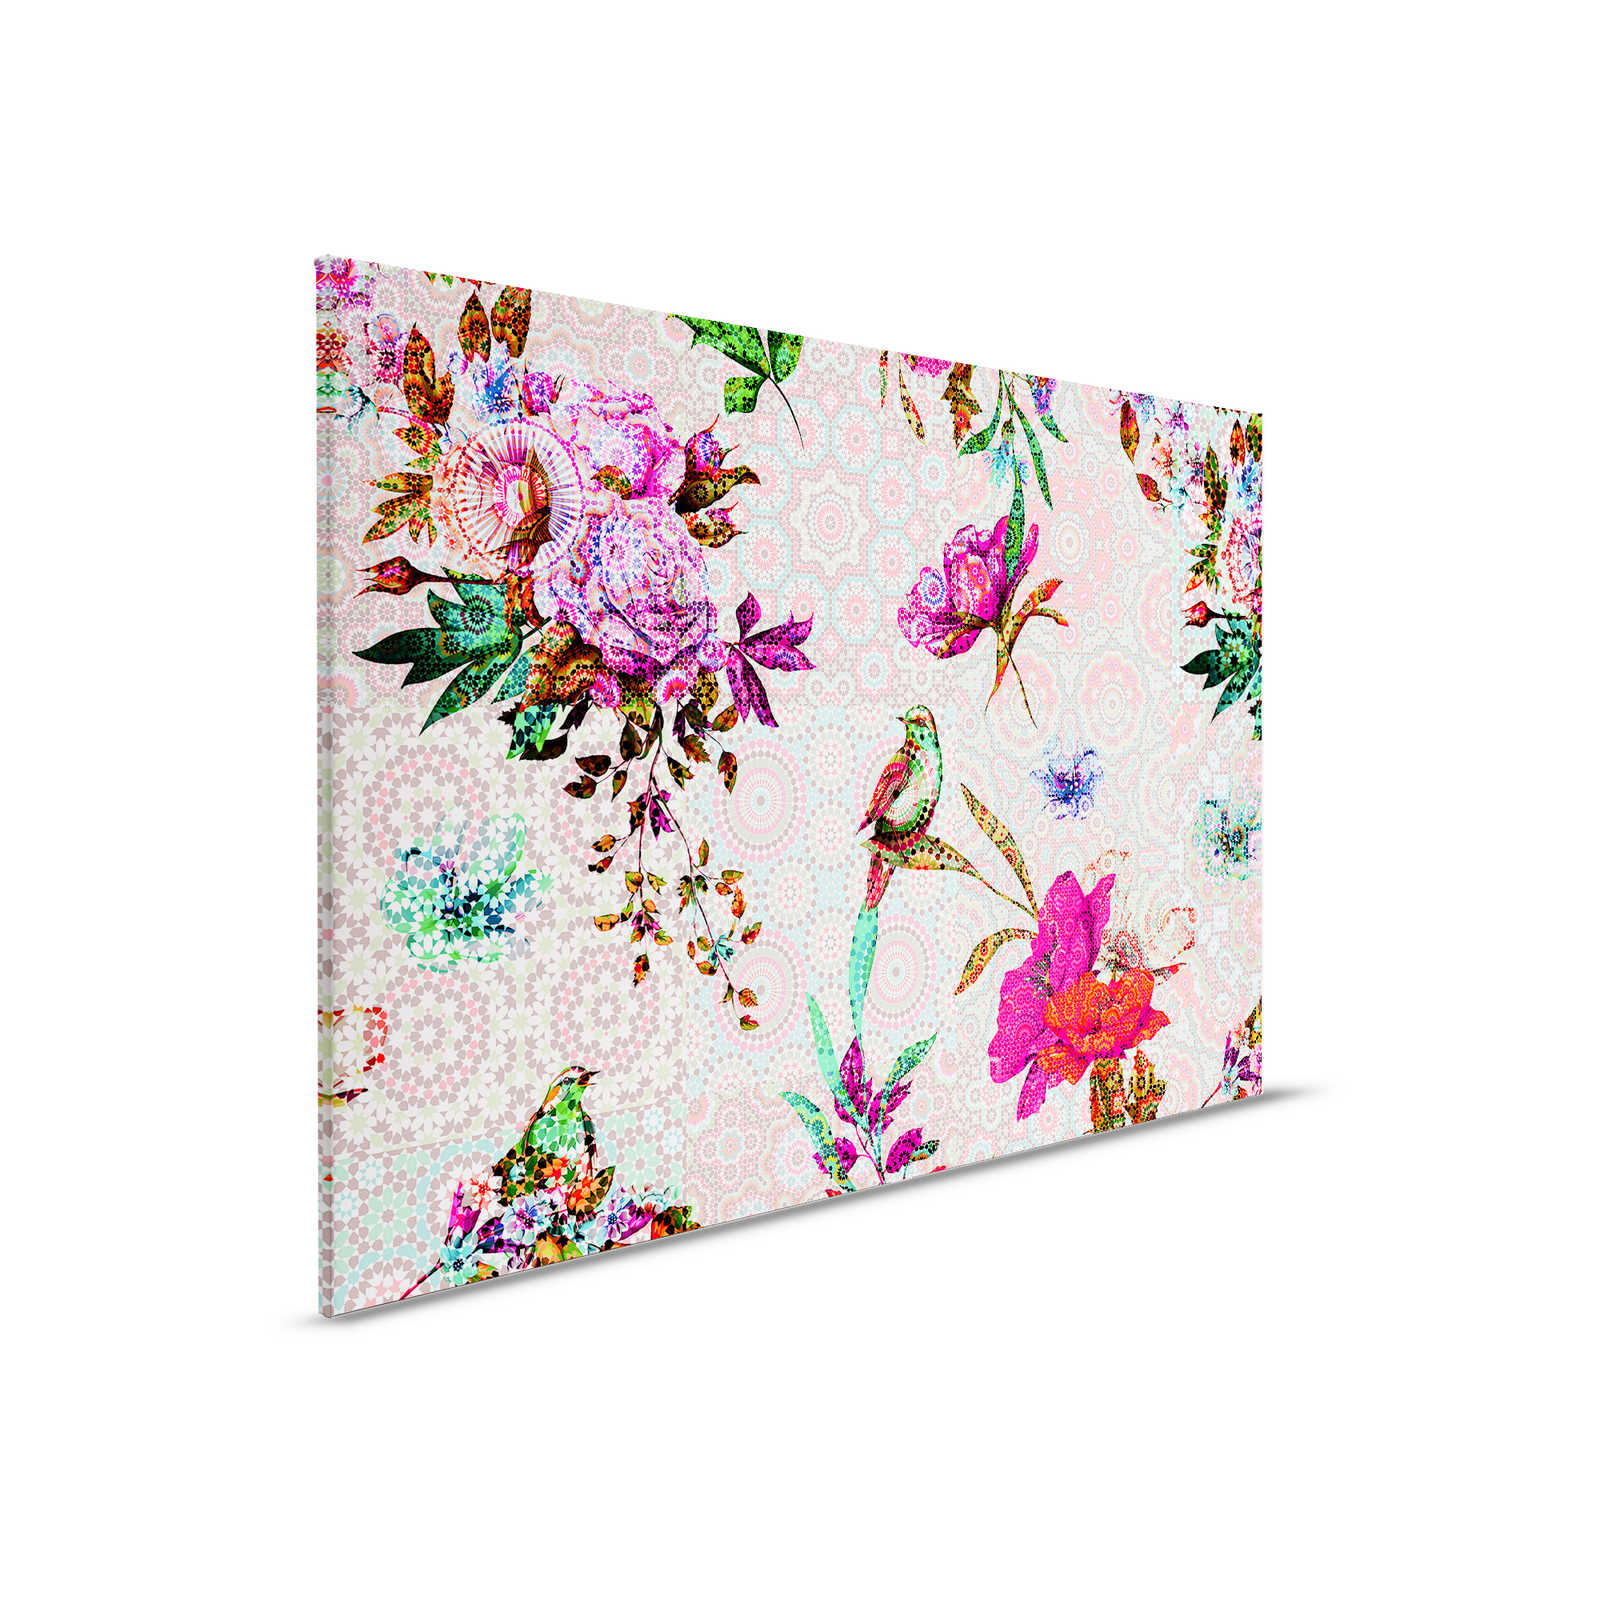         Design Leinwandbild florales Mosaik – 0,90 m x 0,60 m
    